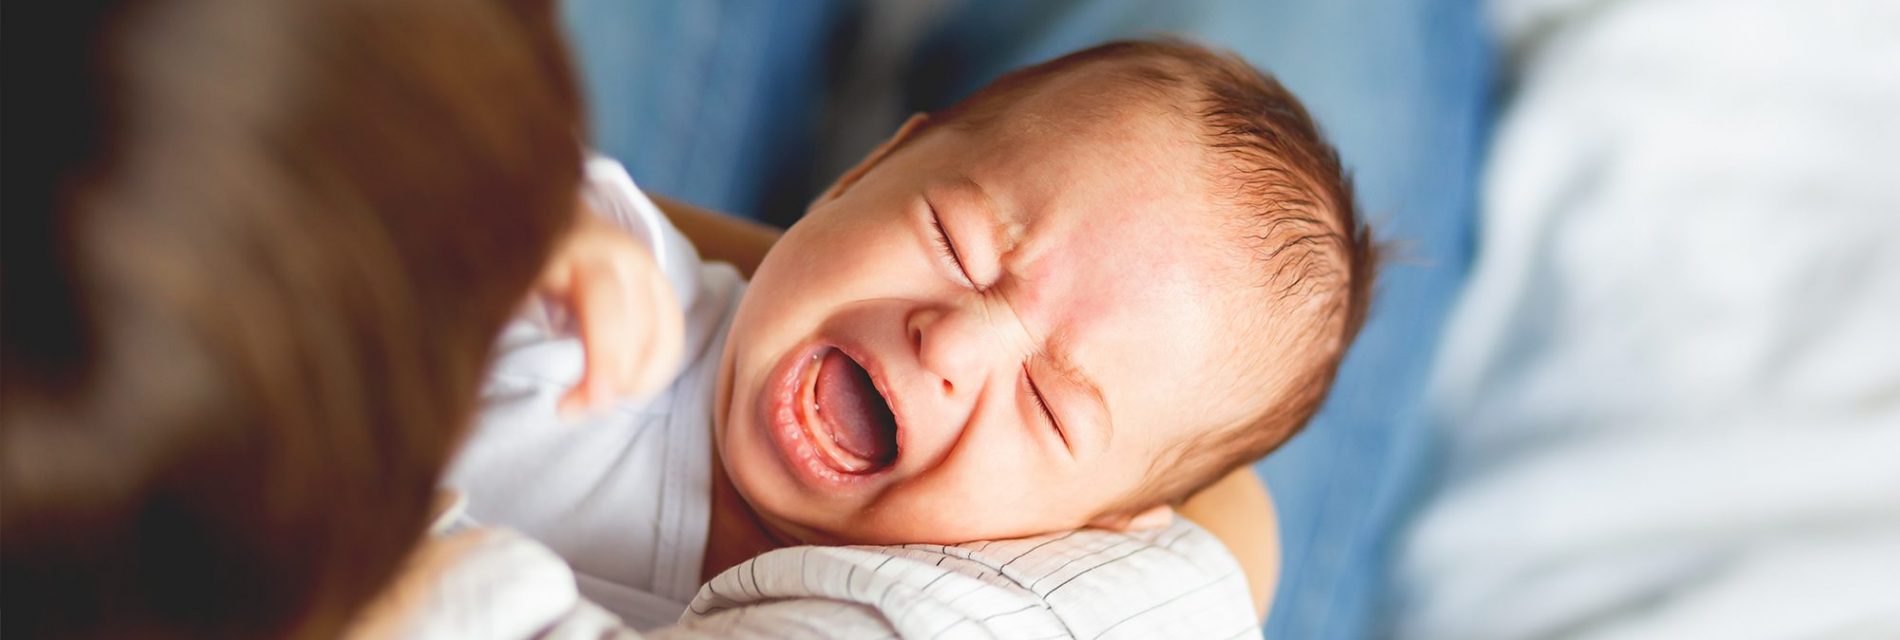 Les premiers maux de bébé - Le Blog de Néroli